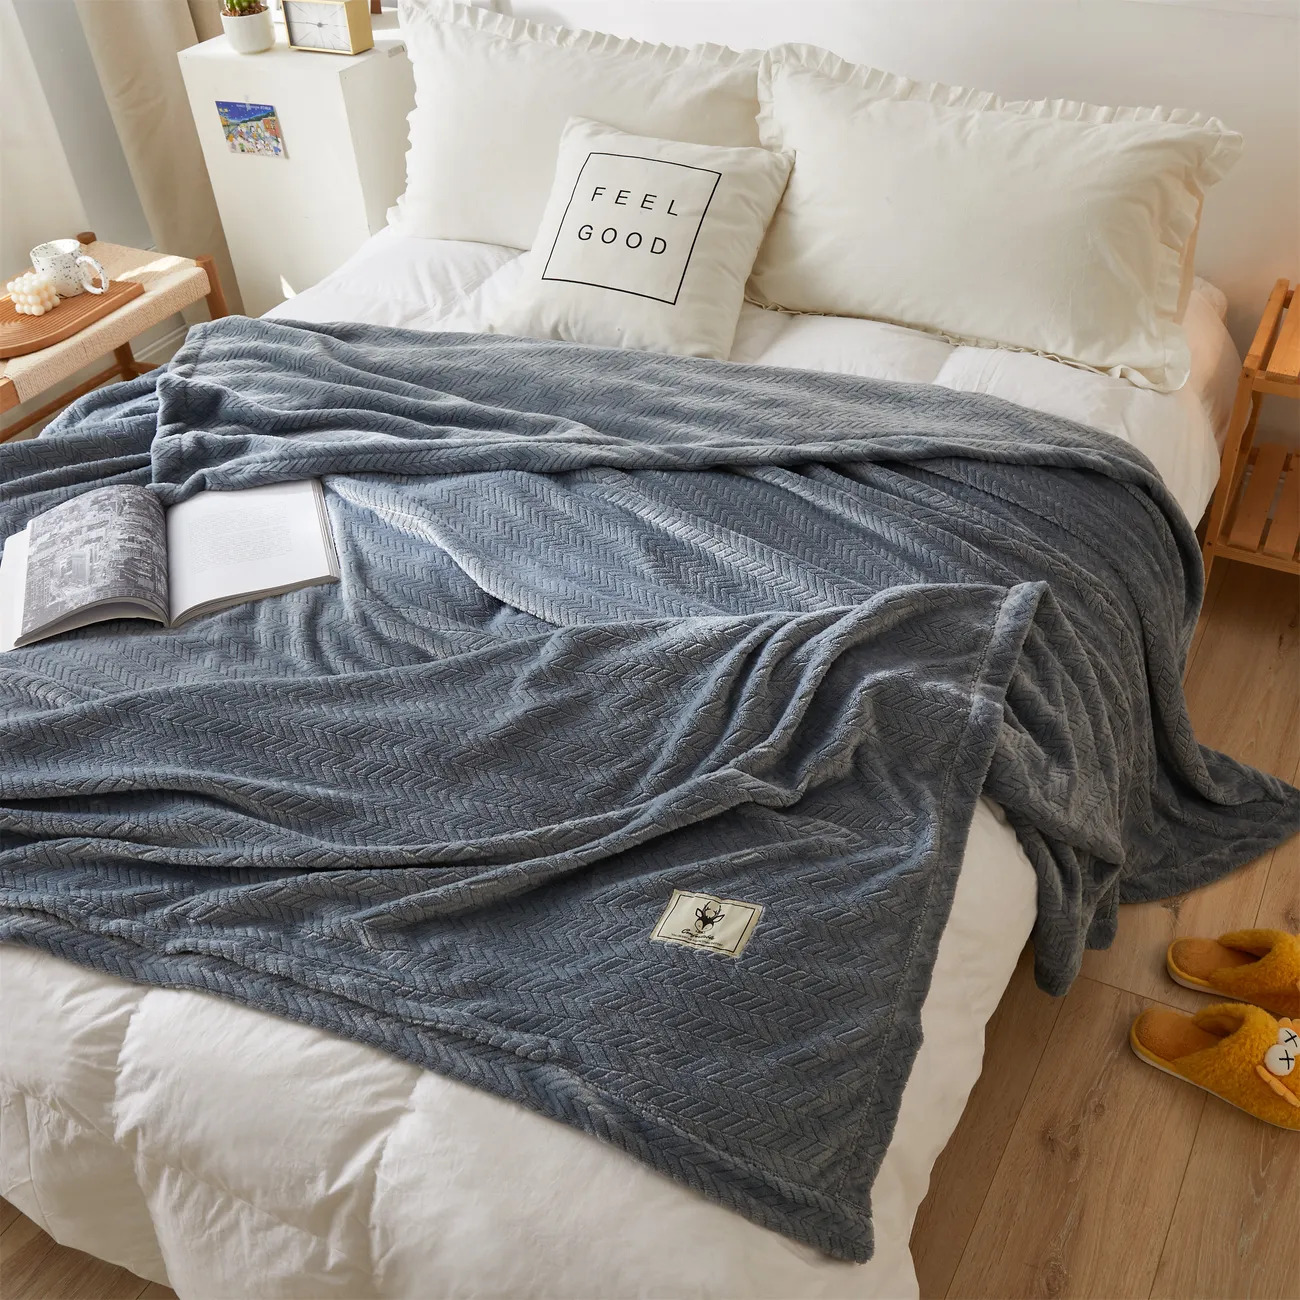 純色現代簡約風格毯子 - 150cm x 200cm 尺寸，溫暖、舒適、親膚 藍灰色 big image 1